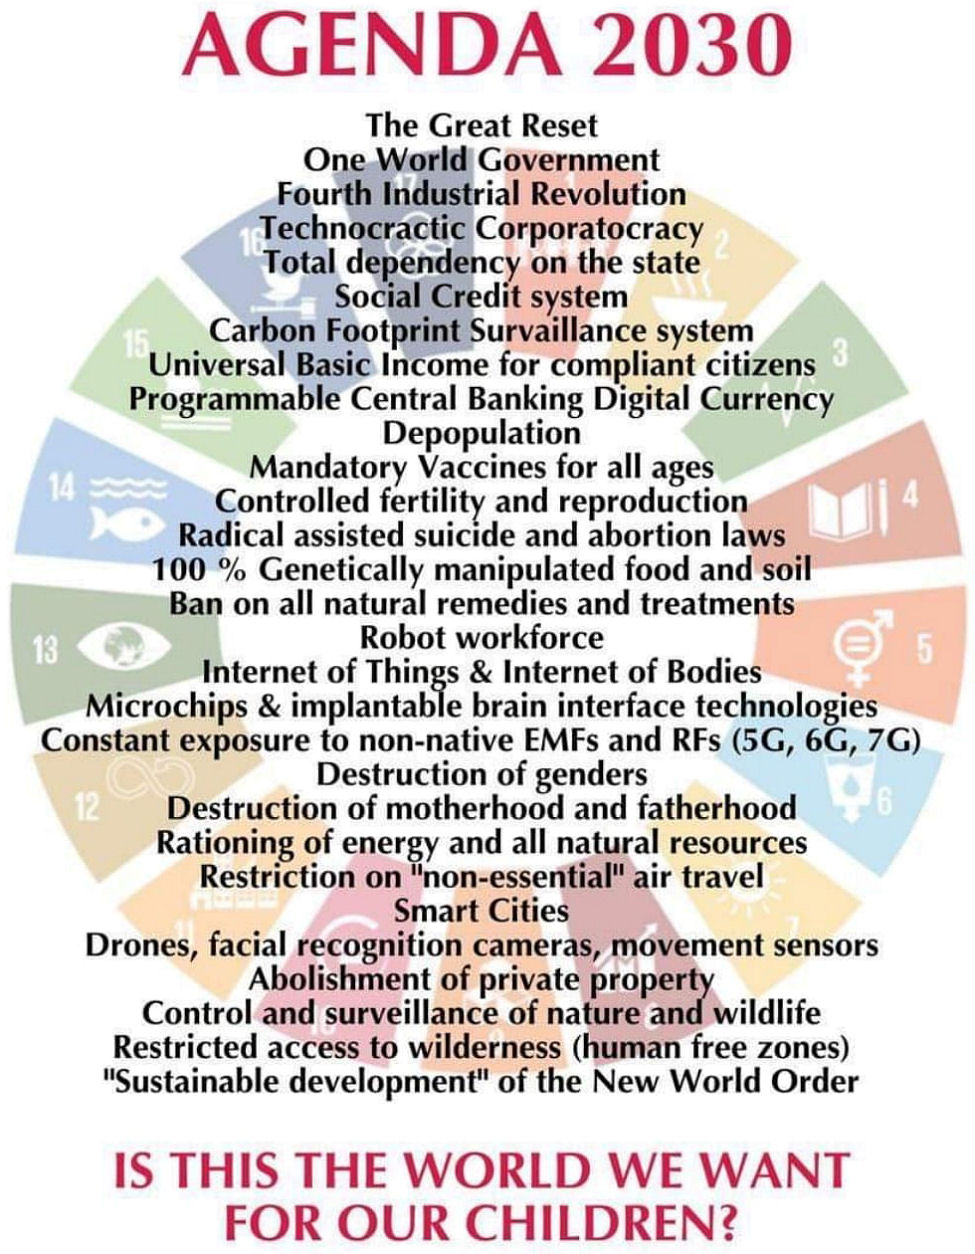 Agenda 2030 - The Great Reset / Mandatory Vaccines / No Genders / No Parents / Suicide / Genocide